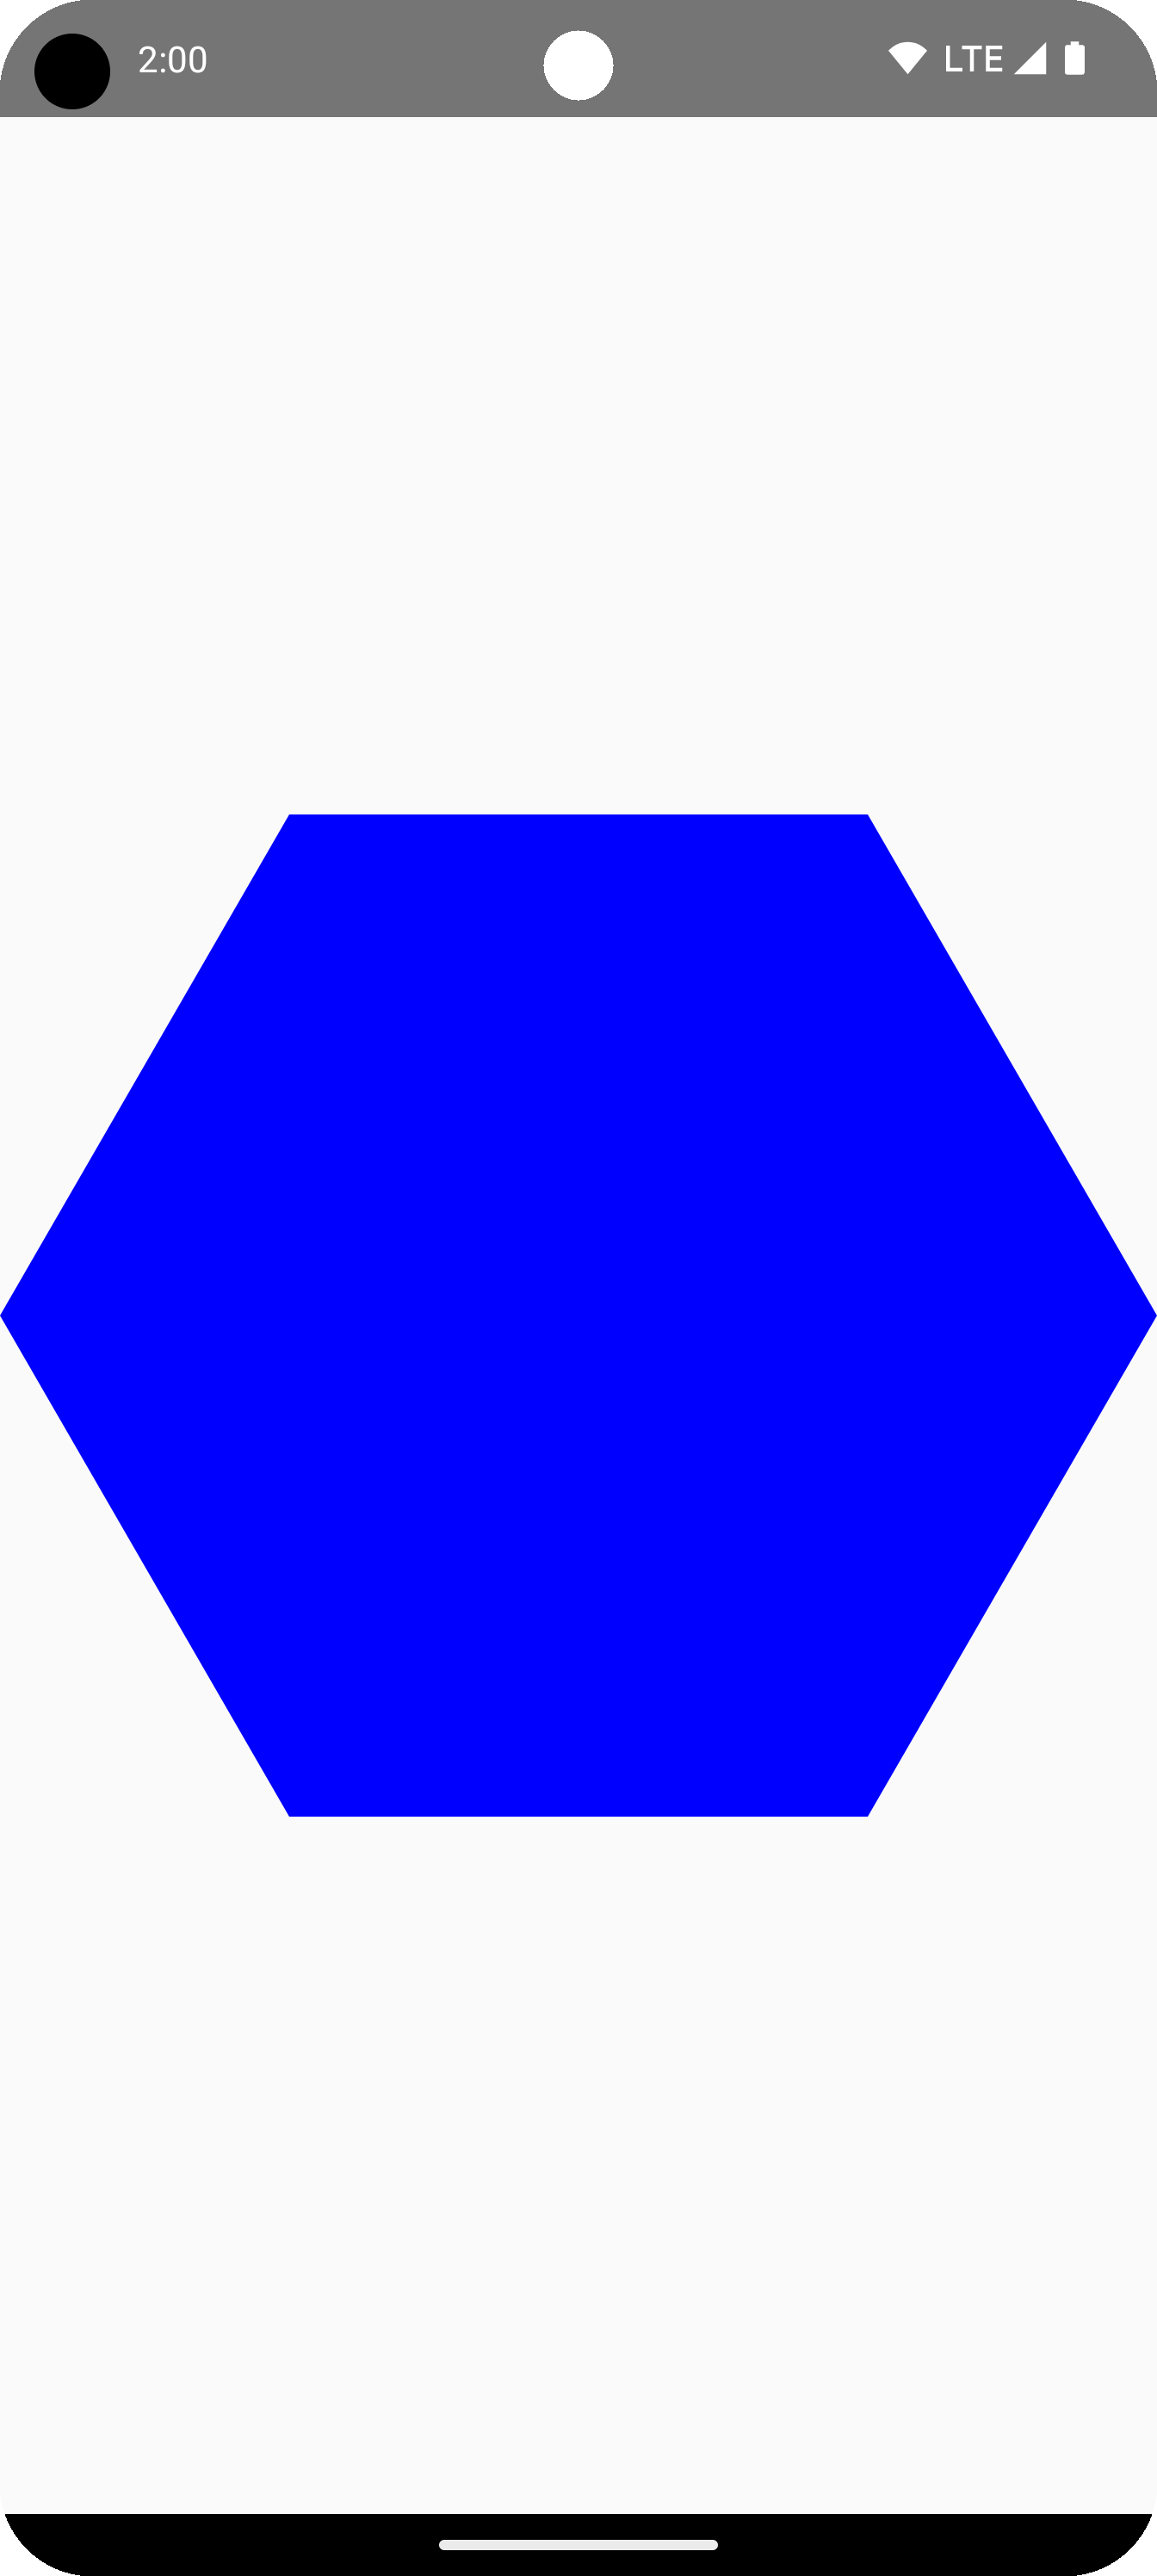 Hình lục giác xanh dương ở giữa vùng vẽ